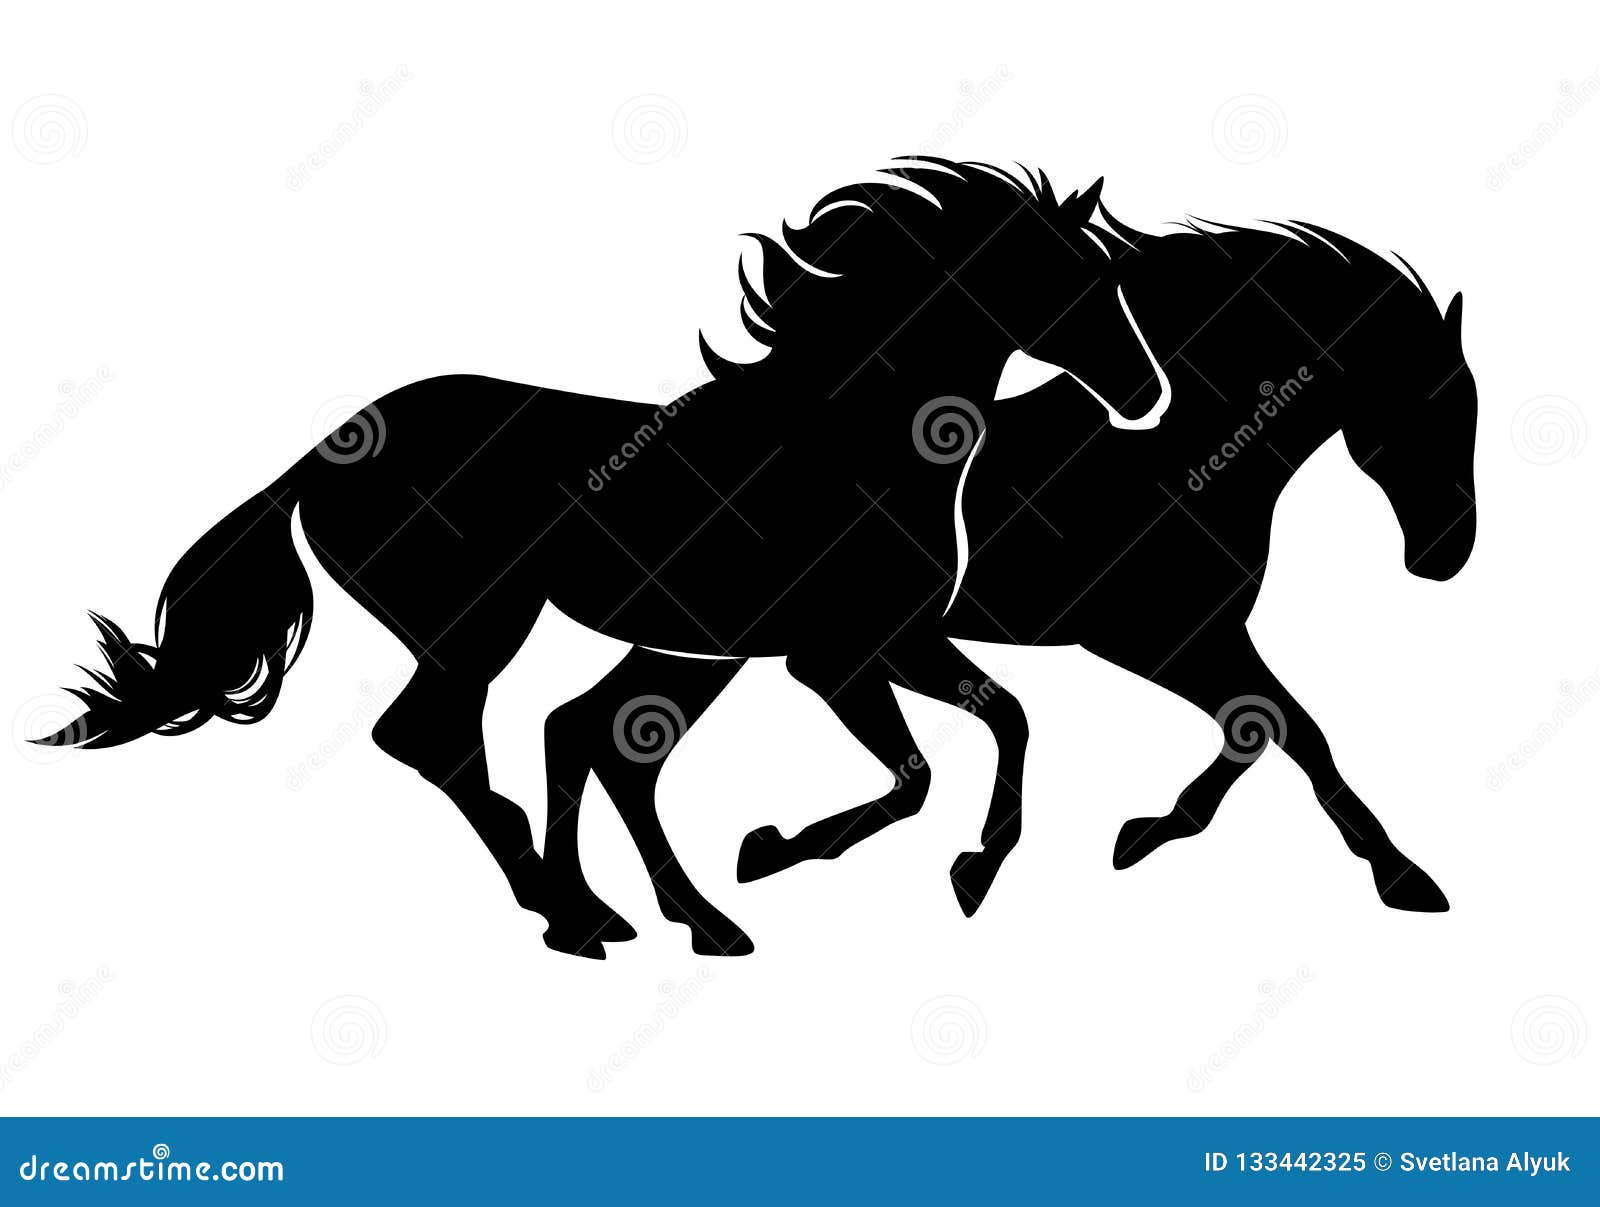 pair of horses black  silhouette